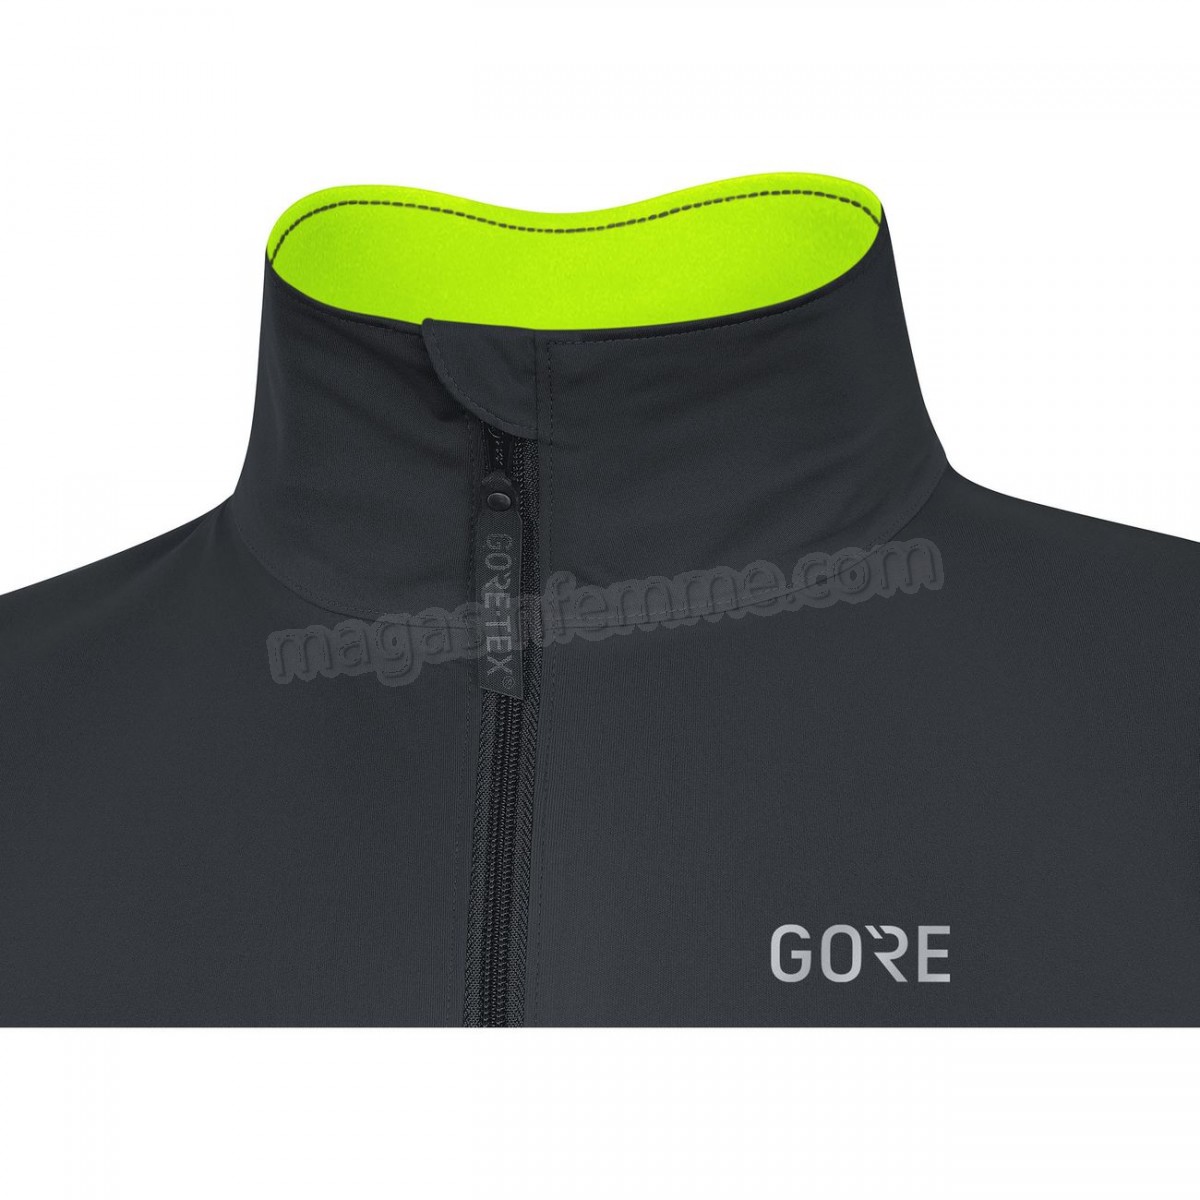 Gore-Cyclisme sur route homme GORE Imperméable Gore-Tex C5 Active en solde - -6